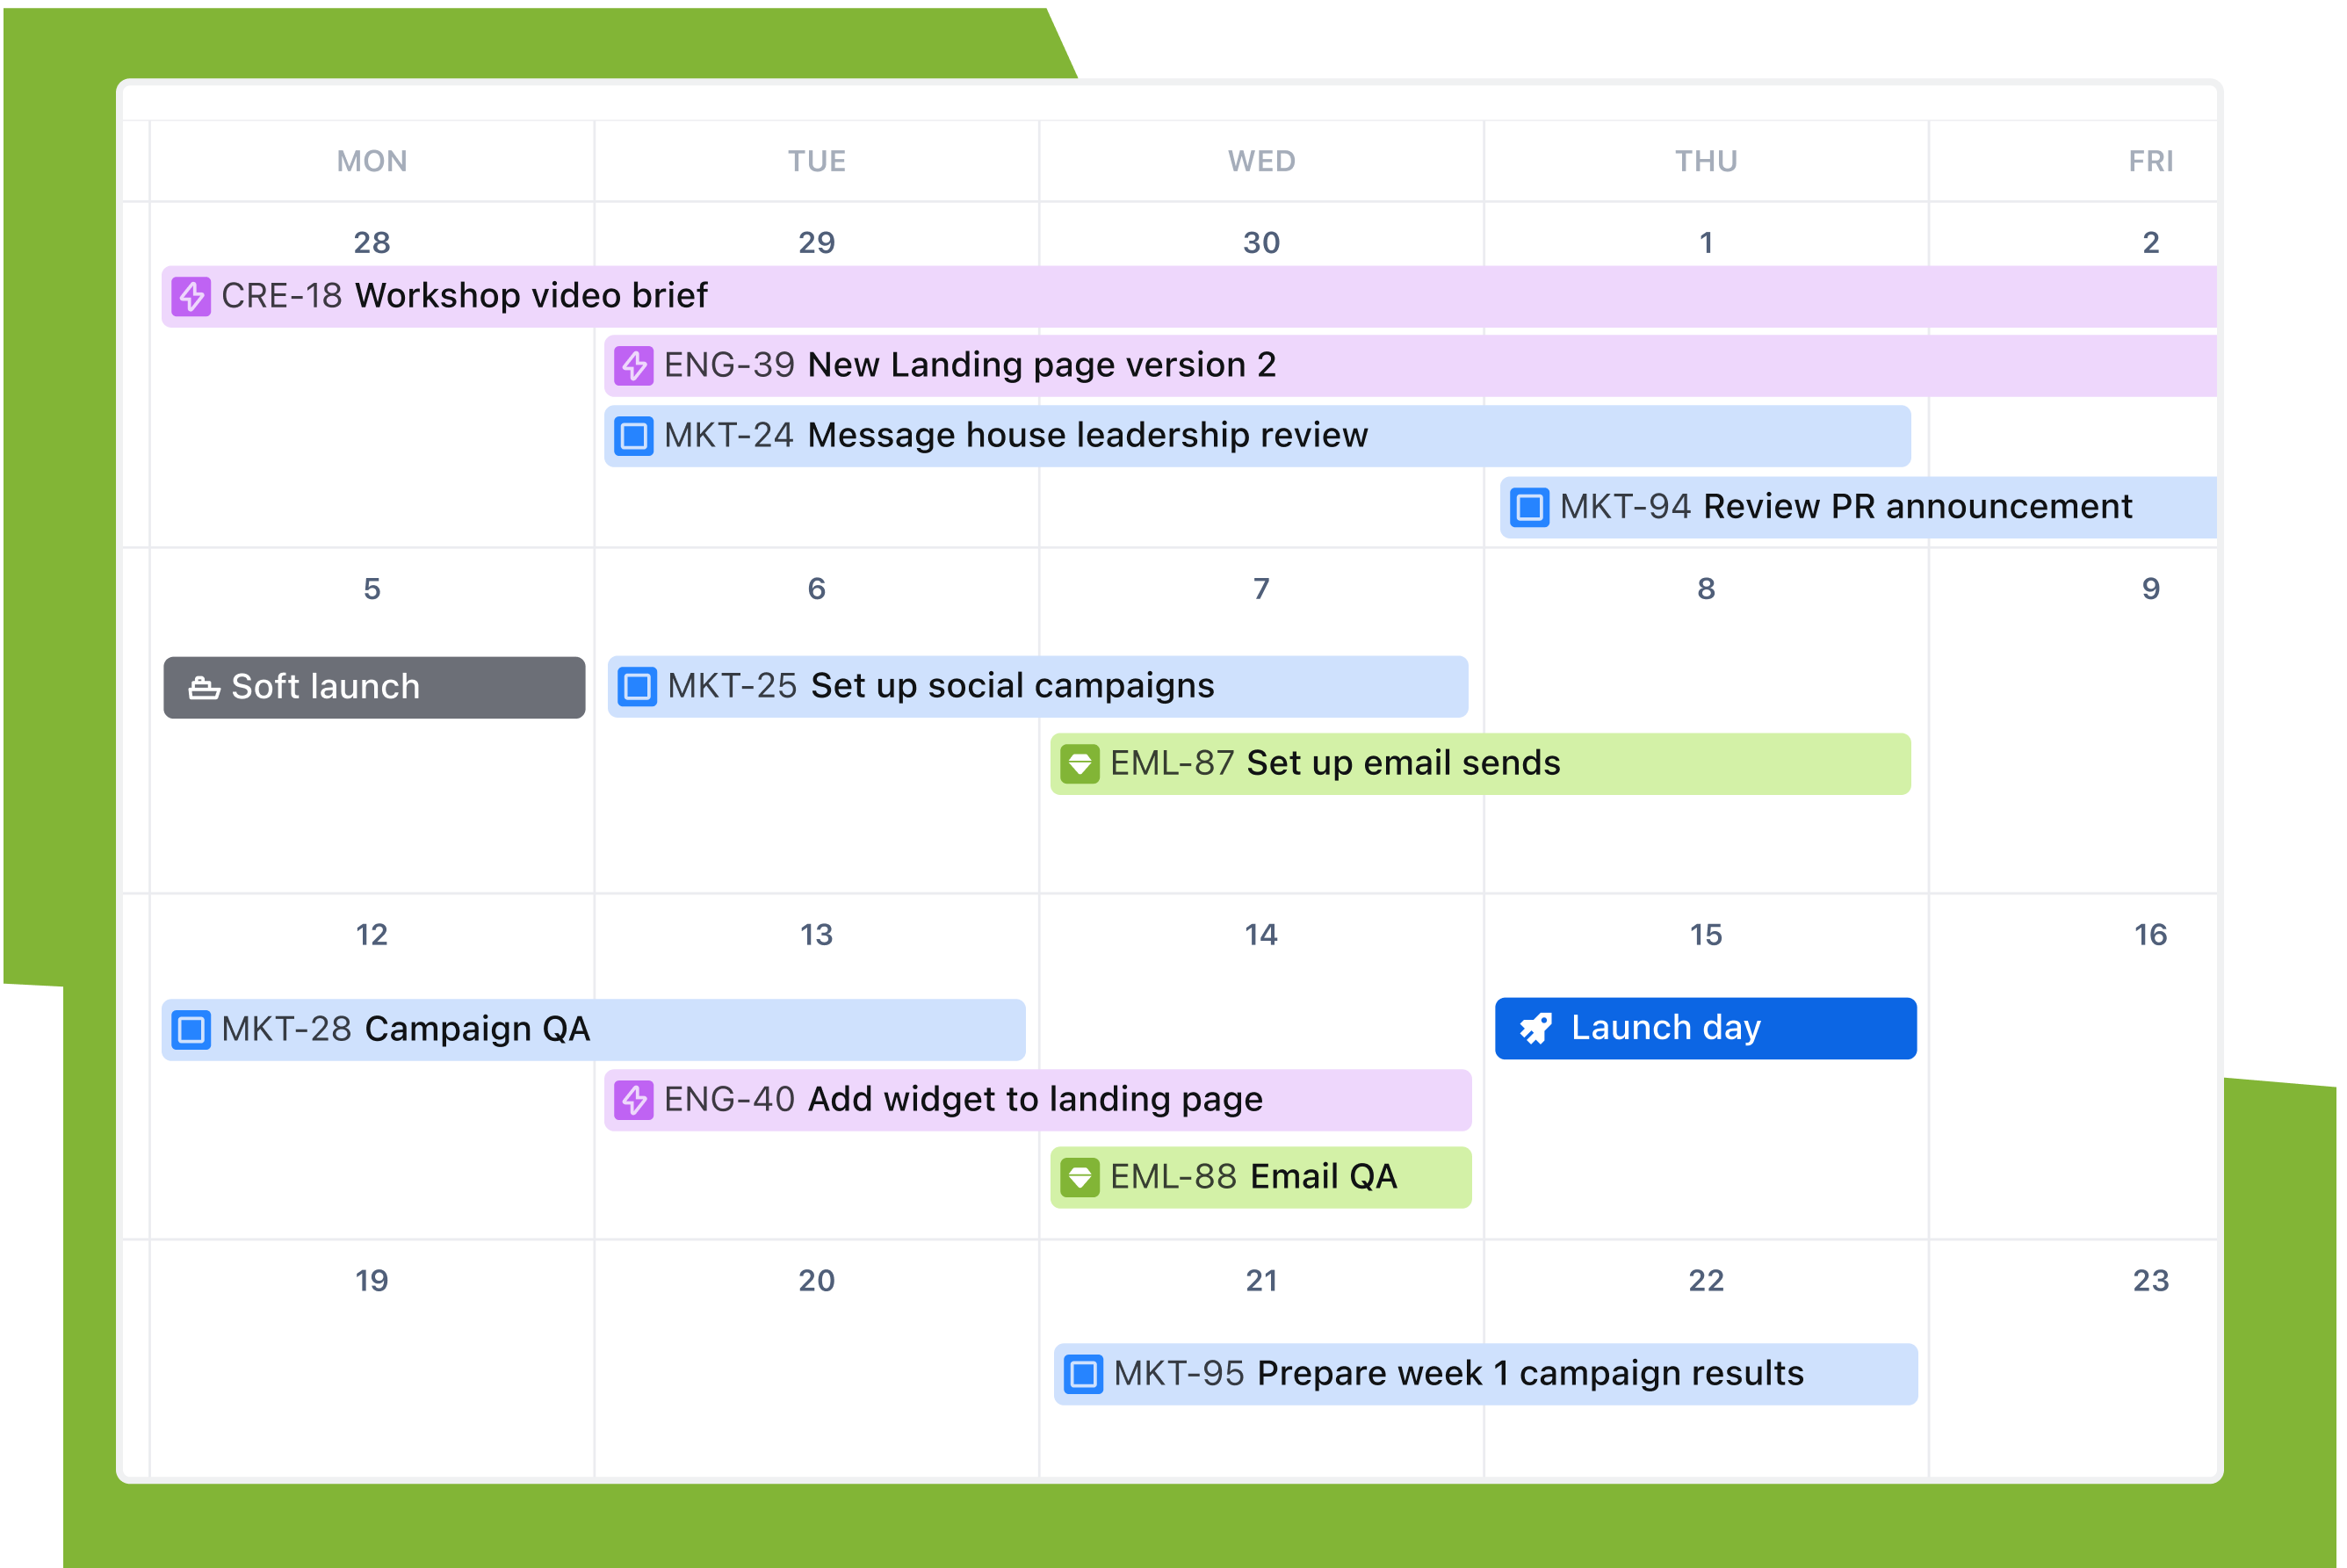 Visualização de calendário de um projeto do Jira mostrando tarefas sobrepostas de equipes diferentes para a preparação de um lançamento de marketing.